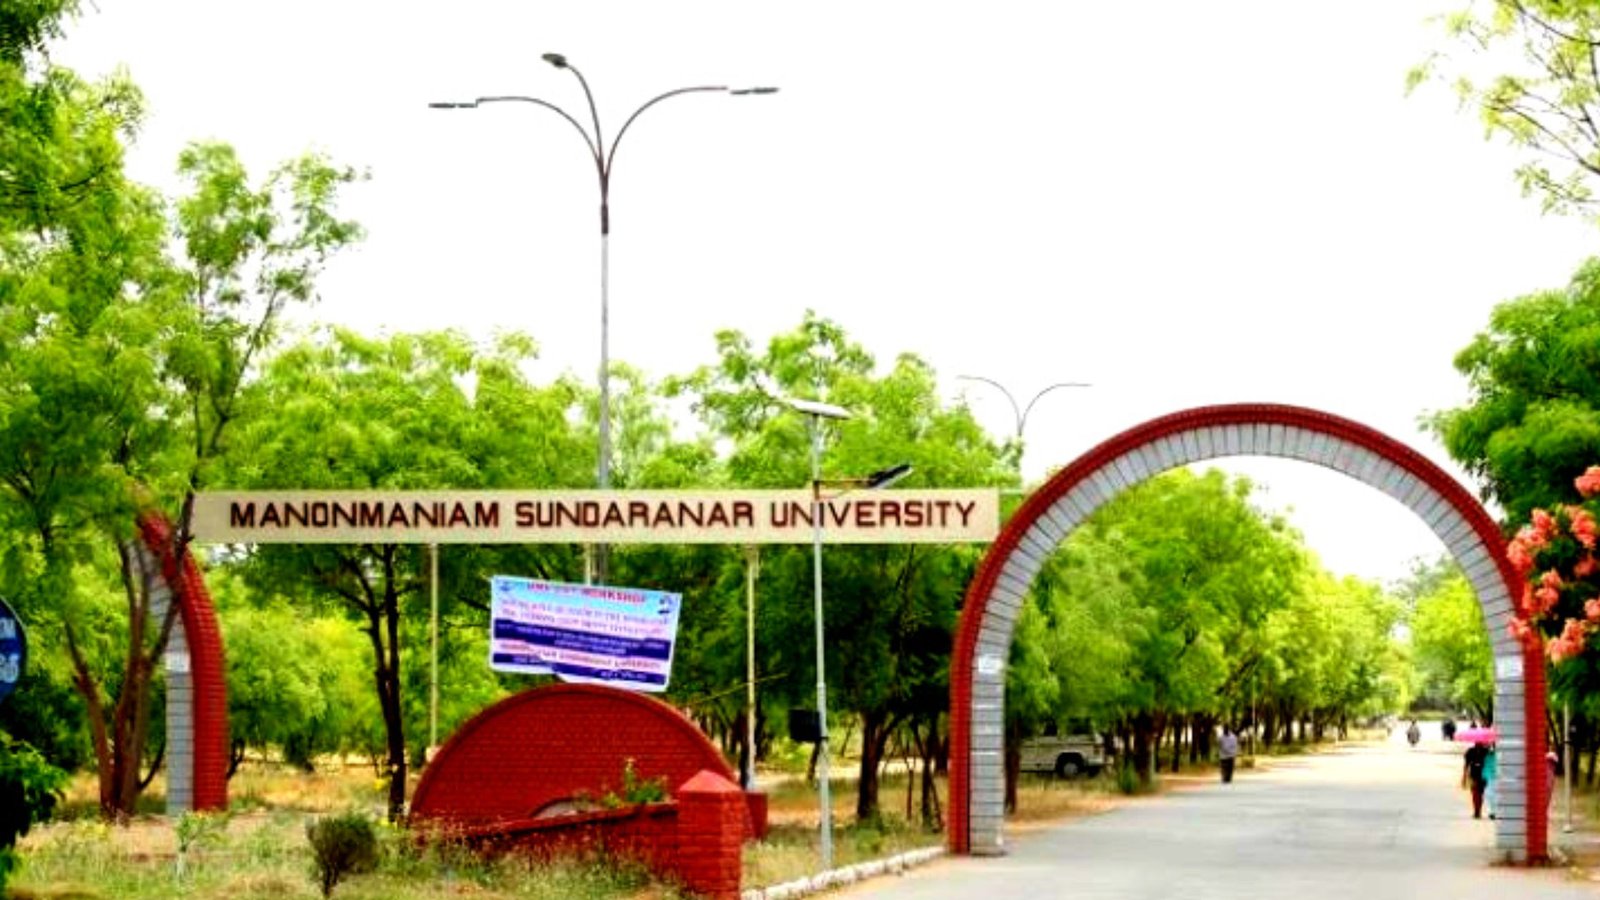 Manonmaniam sundaranar university in tamil